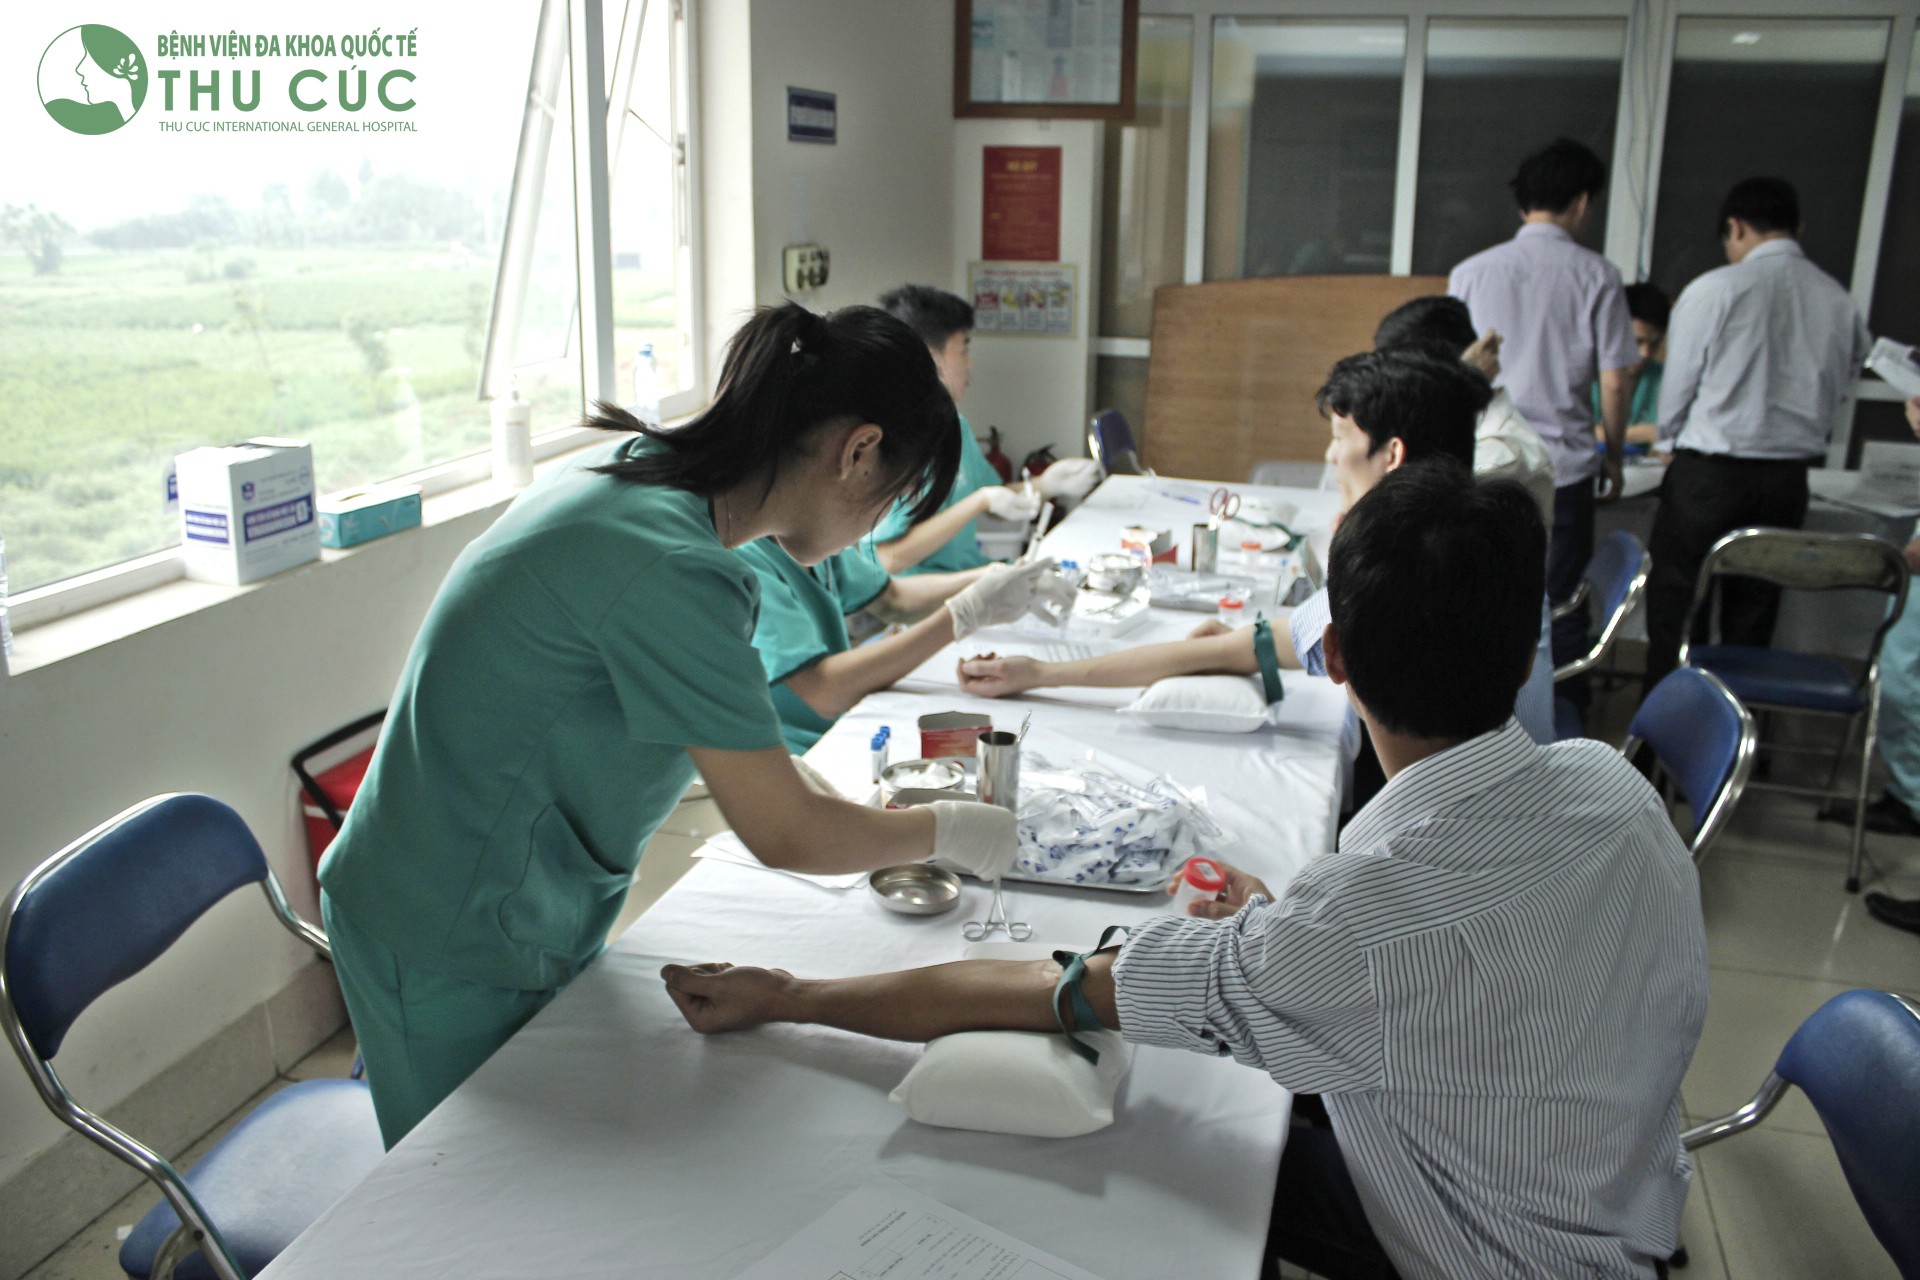 Bệnh viện đa khoa Quốc tế Thu Cúc là một trong những cơ sở y tế khám, điều trị được thực hiện theo mô hình bệnh viện khách sạn.